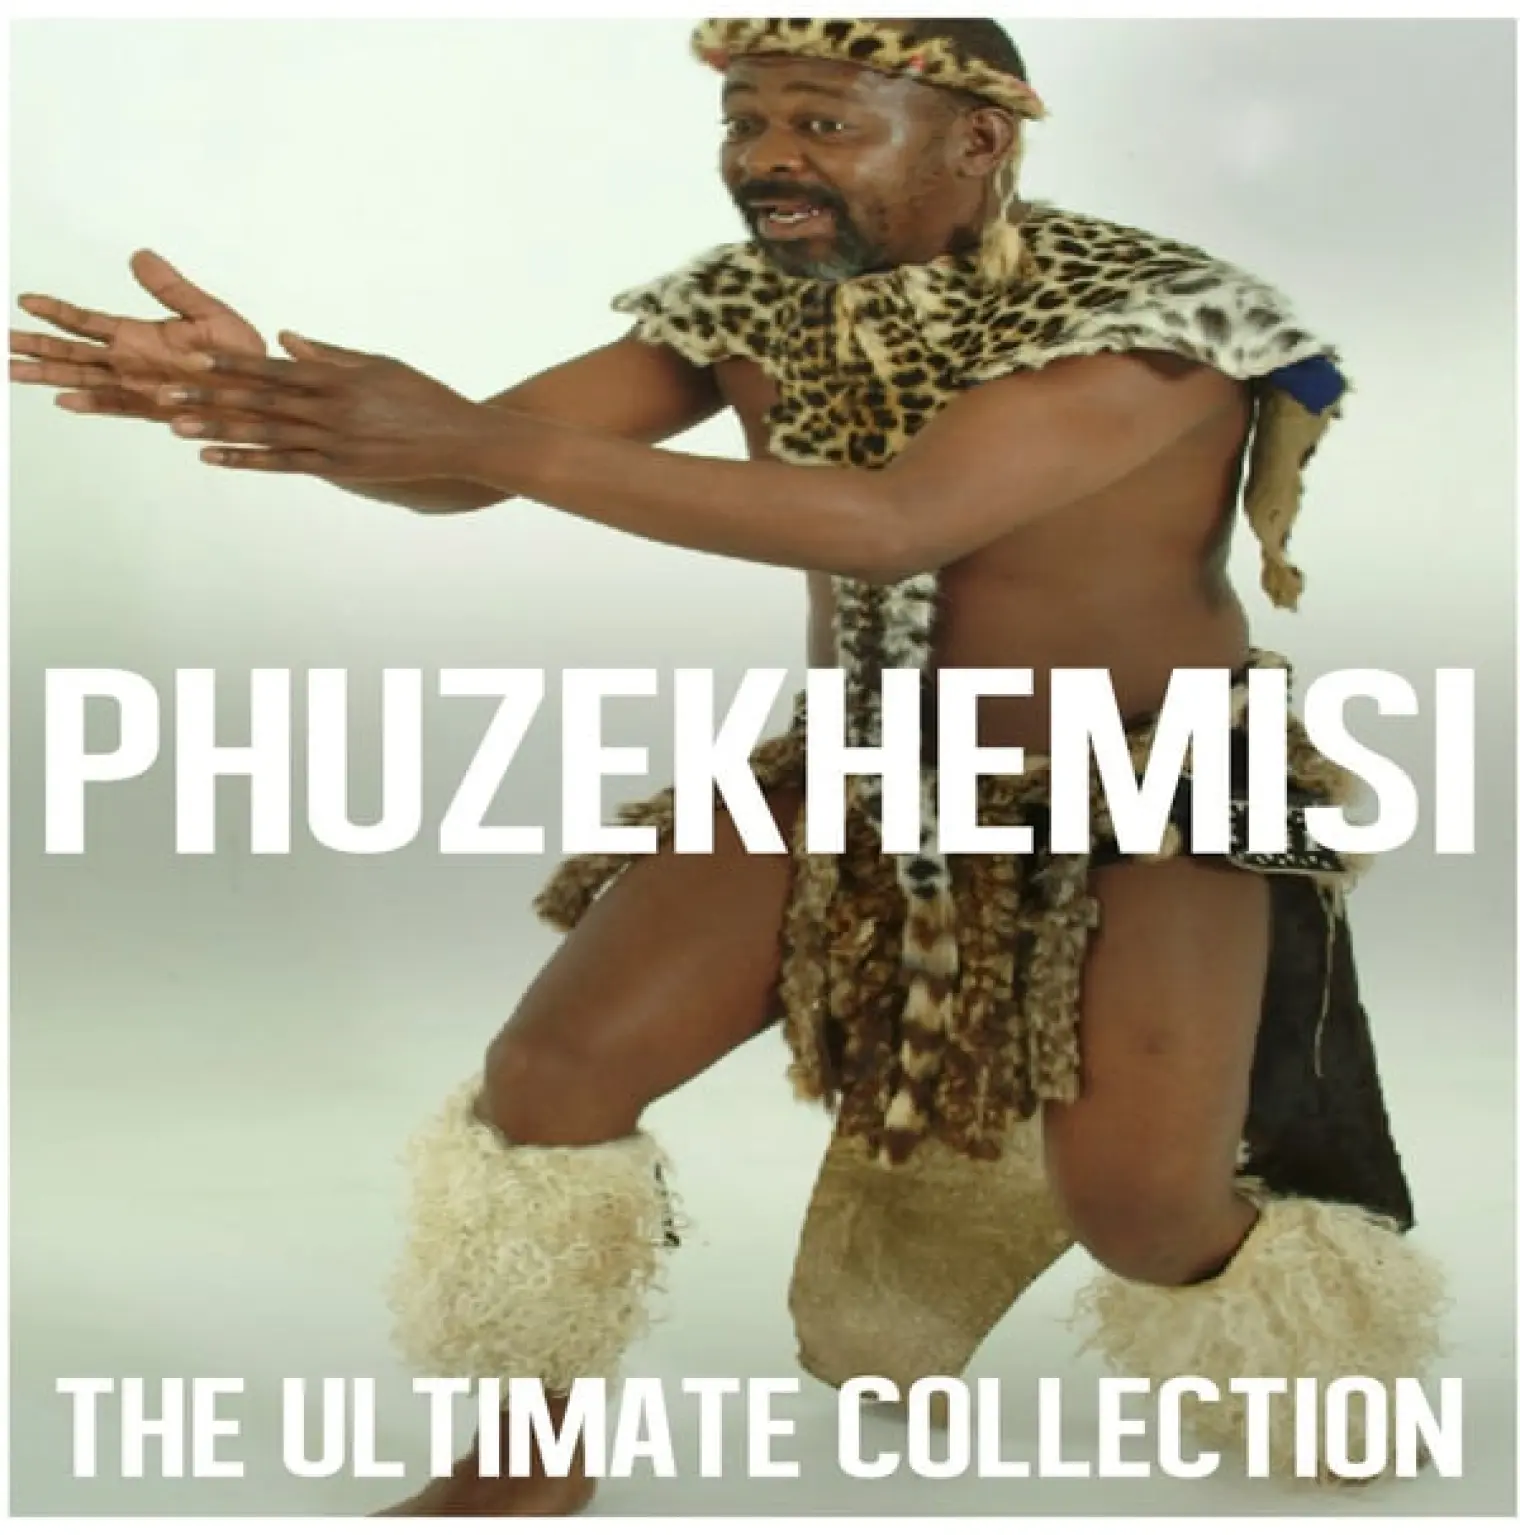 The Ultimate Collection: Phuzekhemisi -  Phuzekhemisi 